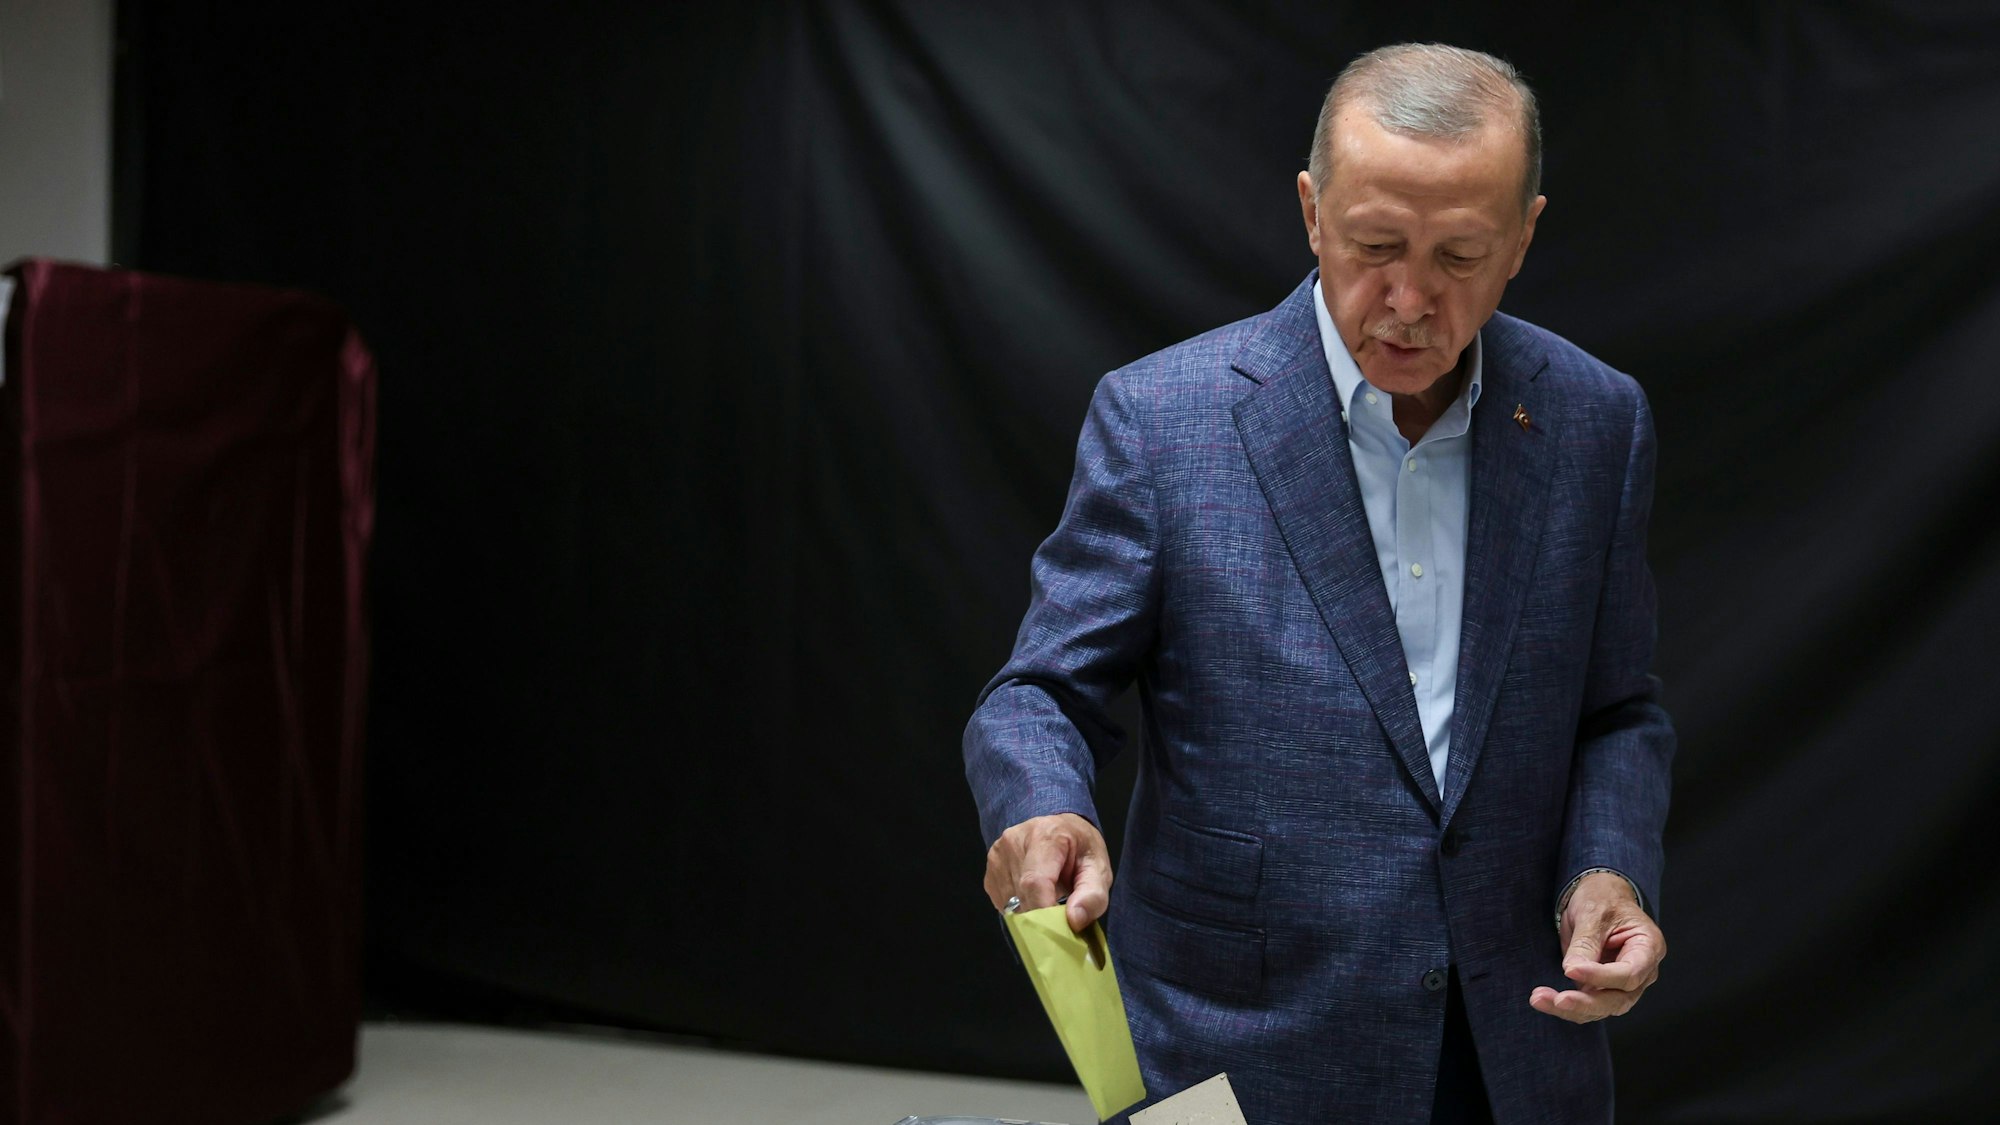 Recep Tayyip Erdogan, Präsident der Türkei und Präsidentschaftskandidat, gibt seinen Stimmzettel in eine Wahlurne in einem Wahllokal in Istanbul.